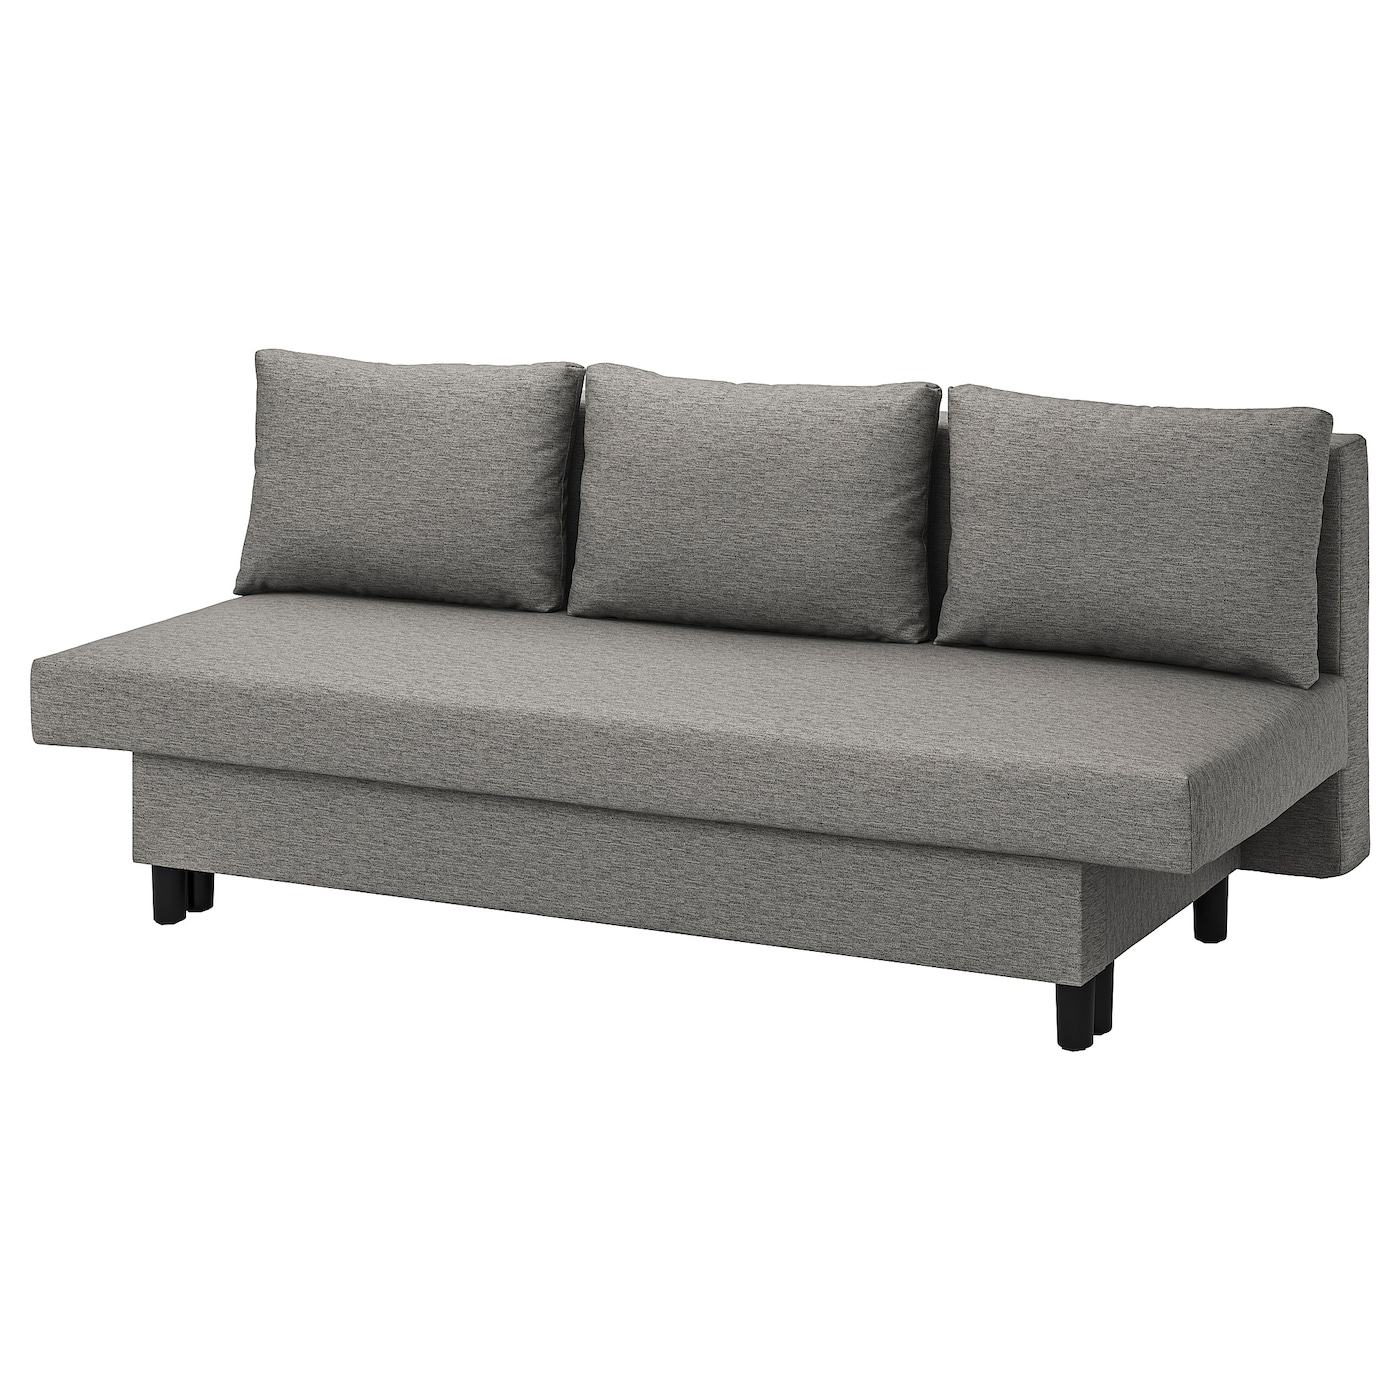 ЭЛВДАЛЕН 3 дивана-кровати с откидной спинкой, Книса серый бежевый ÄLVDALEN IKEA одноместный простой диван для дома складной моющийся диван напольный диван повседневный стул для отдыха односпальная кровать